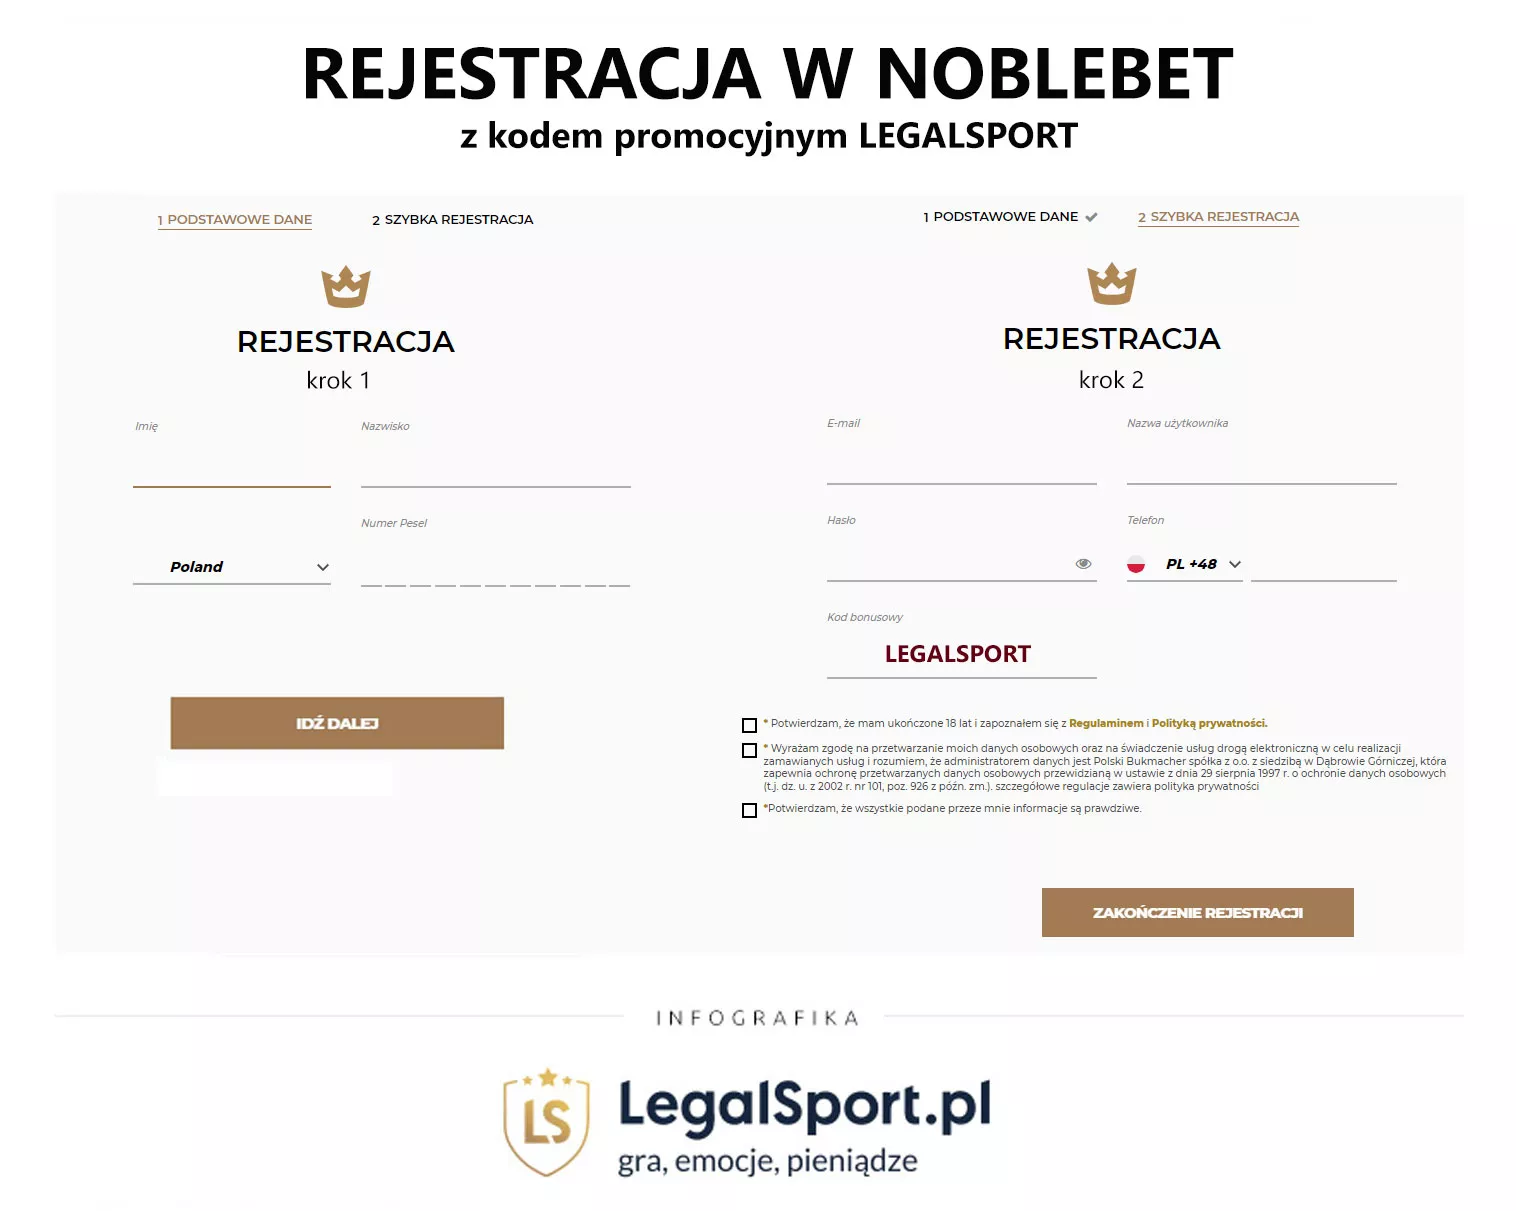 Jak zarejestrować konto w Noblebet i odebrać bonus powitalny 2553 zł?